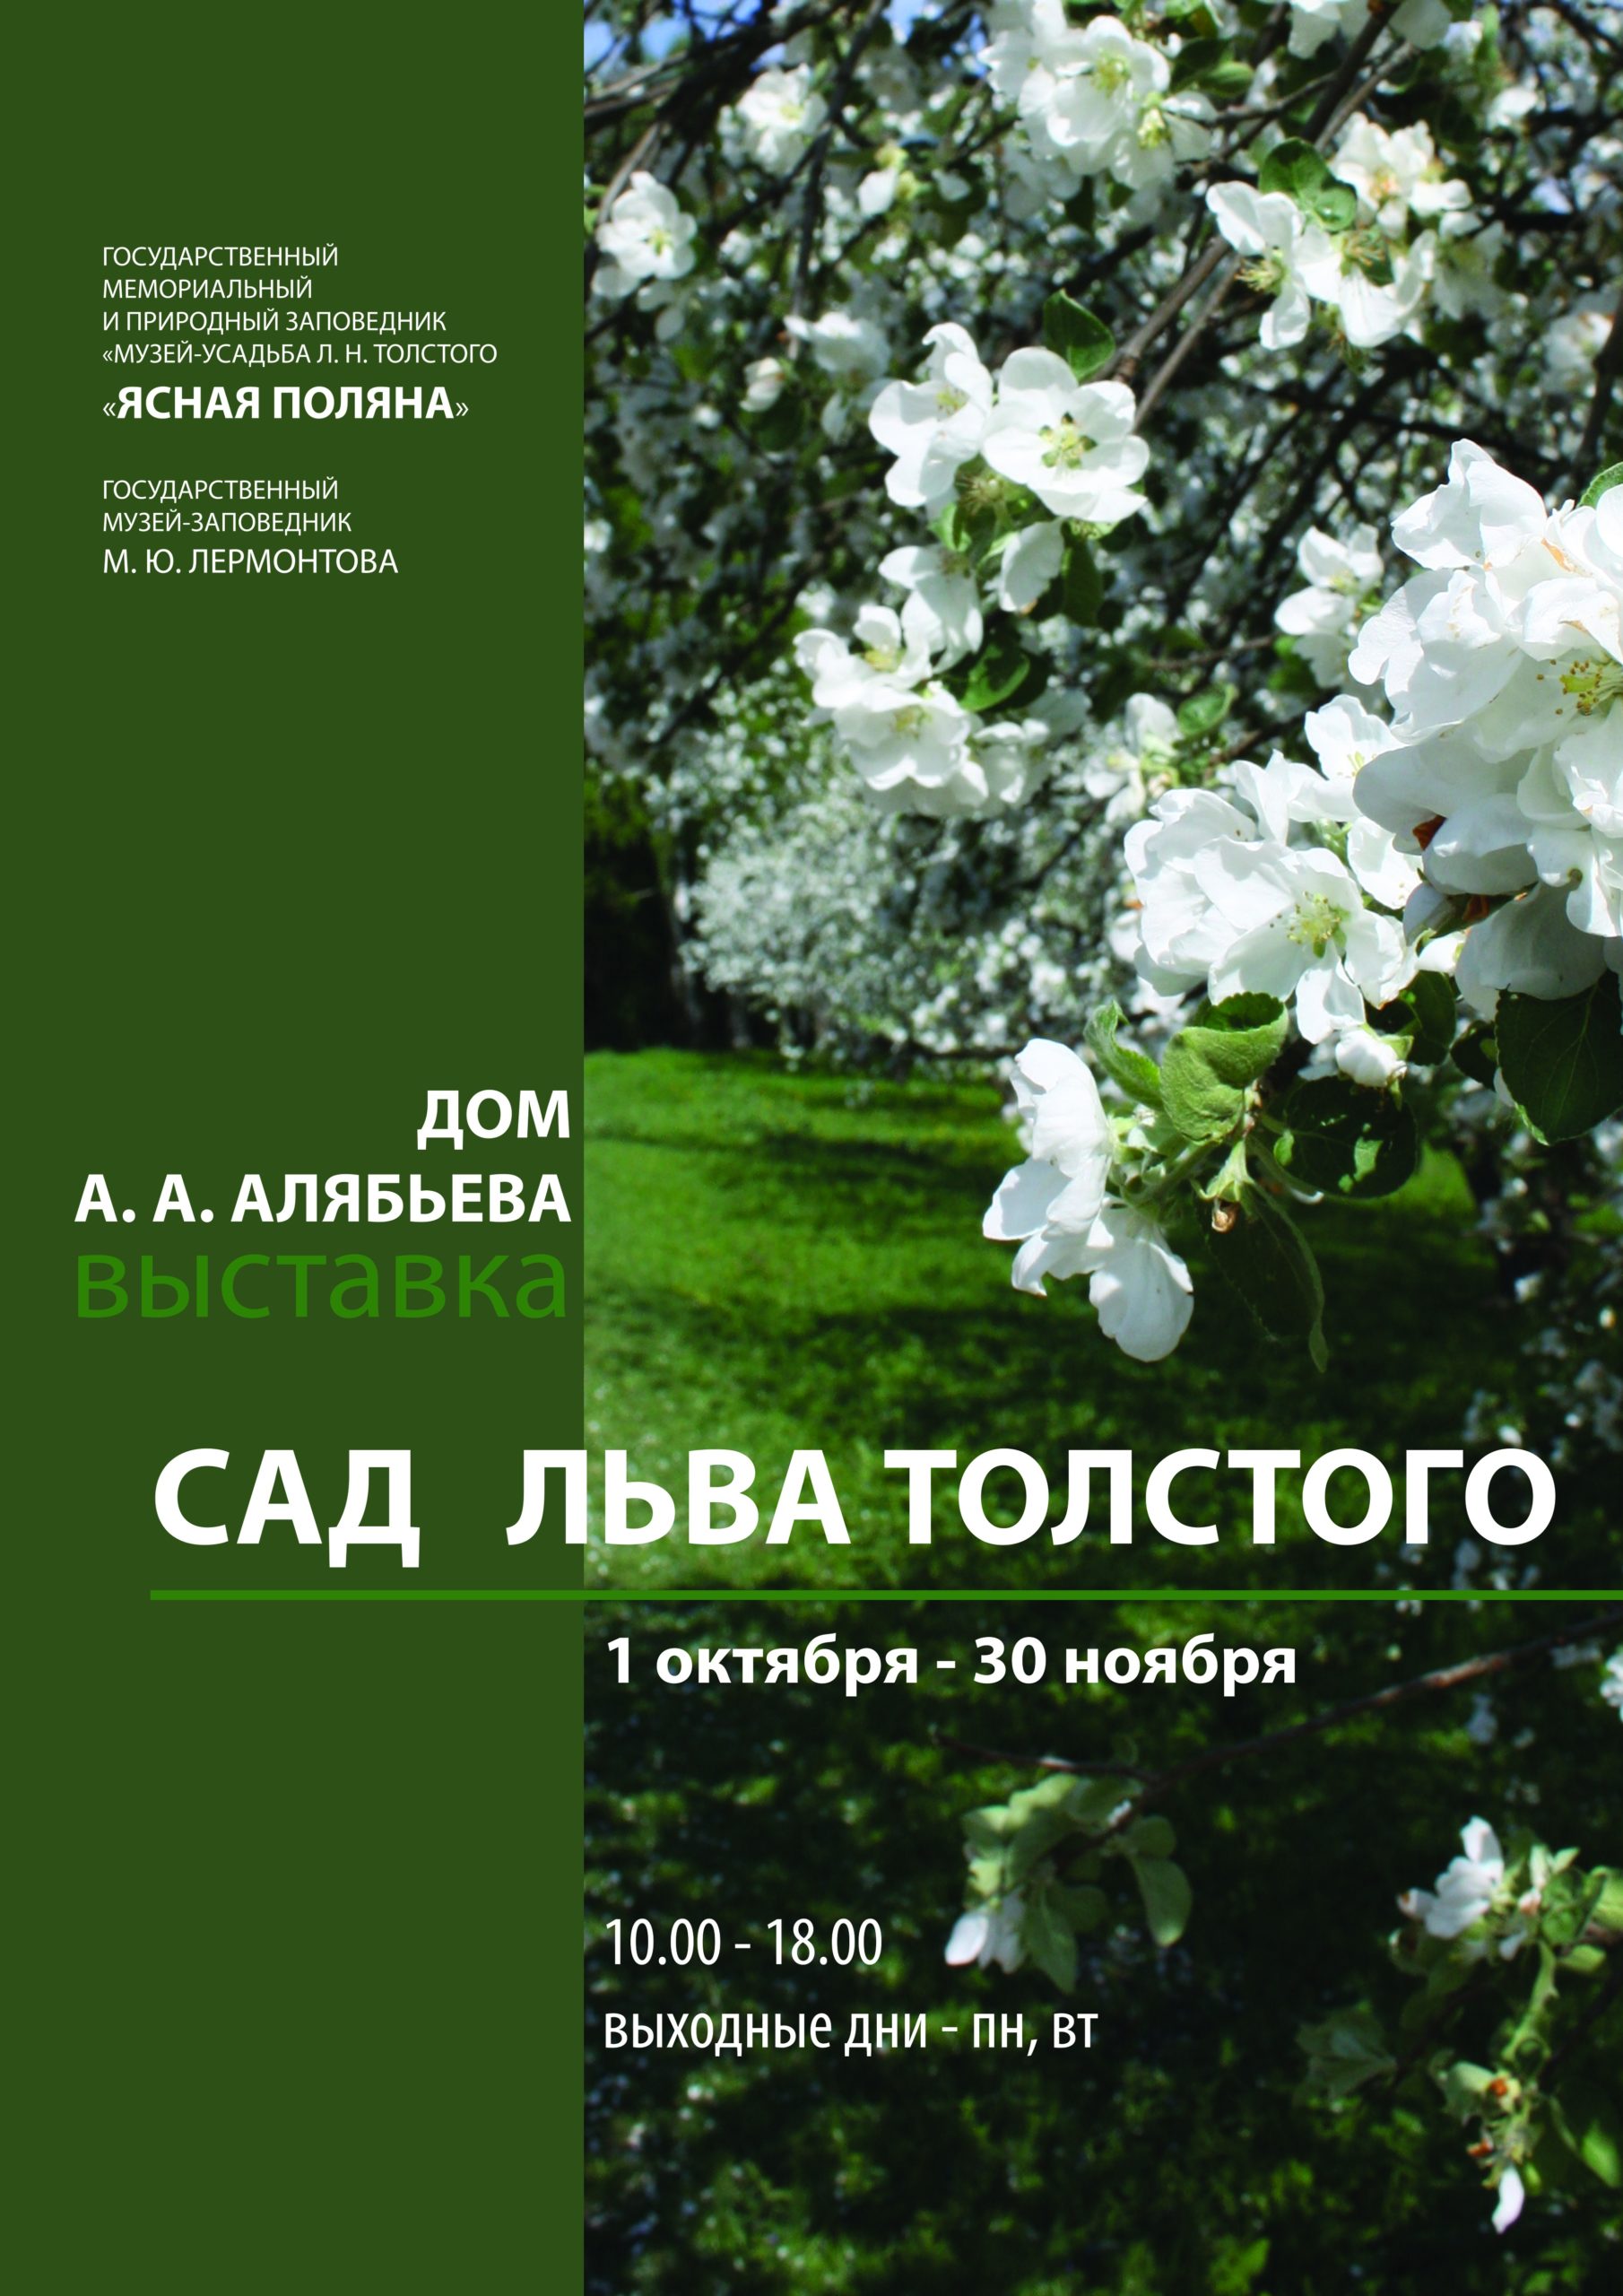 При поддержке НФПП в Пятигорске пройдет выставка «Сад Льва Толстого»